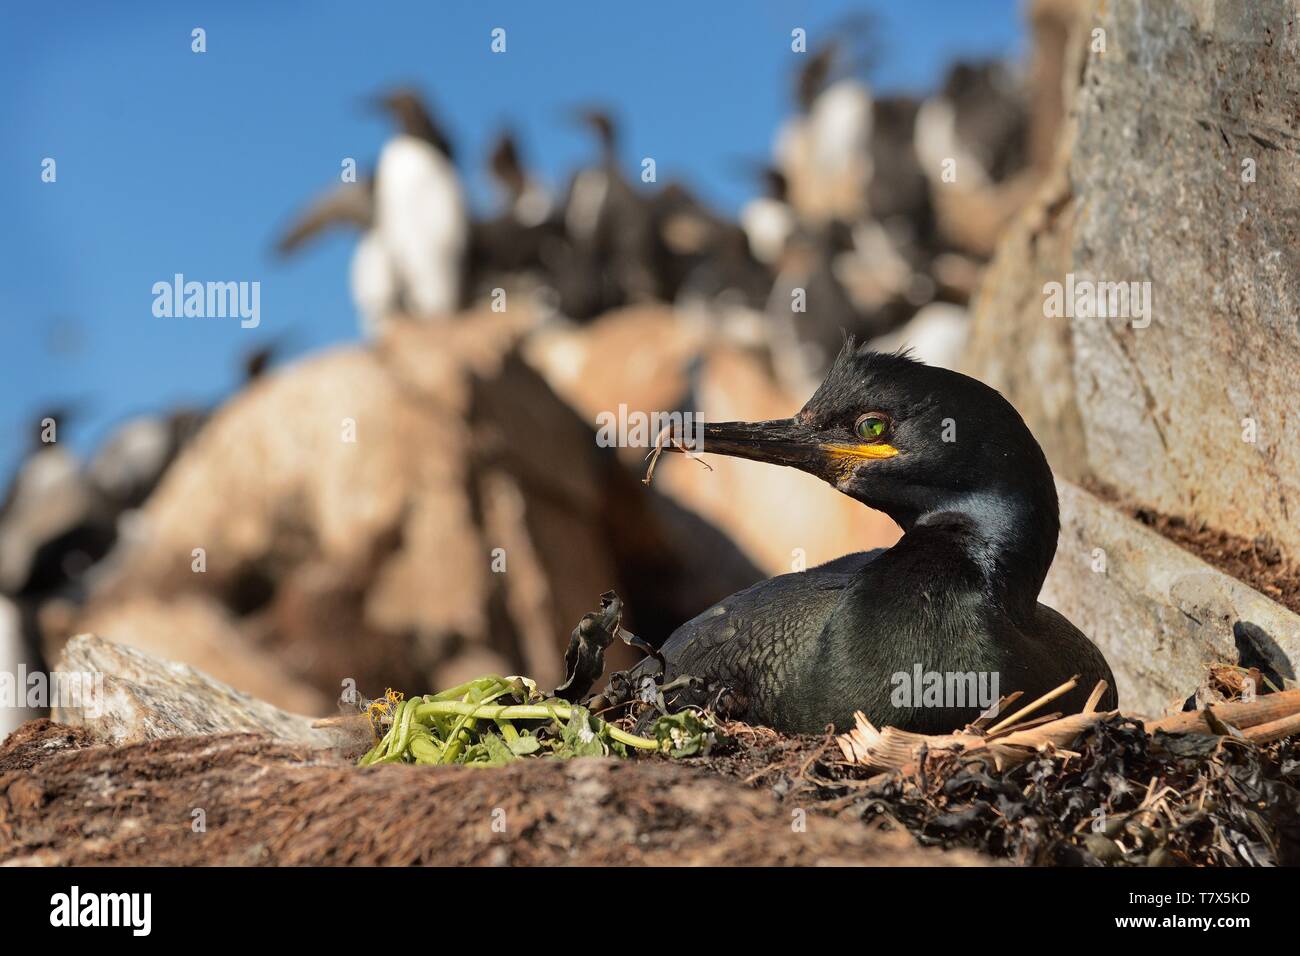 European Shag - Phalacrocorax aristotelis est une espèce de cormoran. Elle se reproduit autour de la côtes rocheuses de l'Europe de l'ouest et du Sud, Asie du Sud-Ouest Banque D'Images